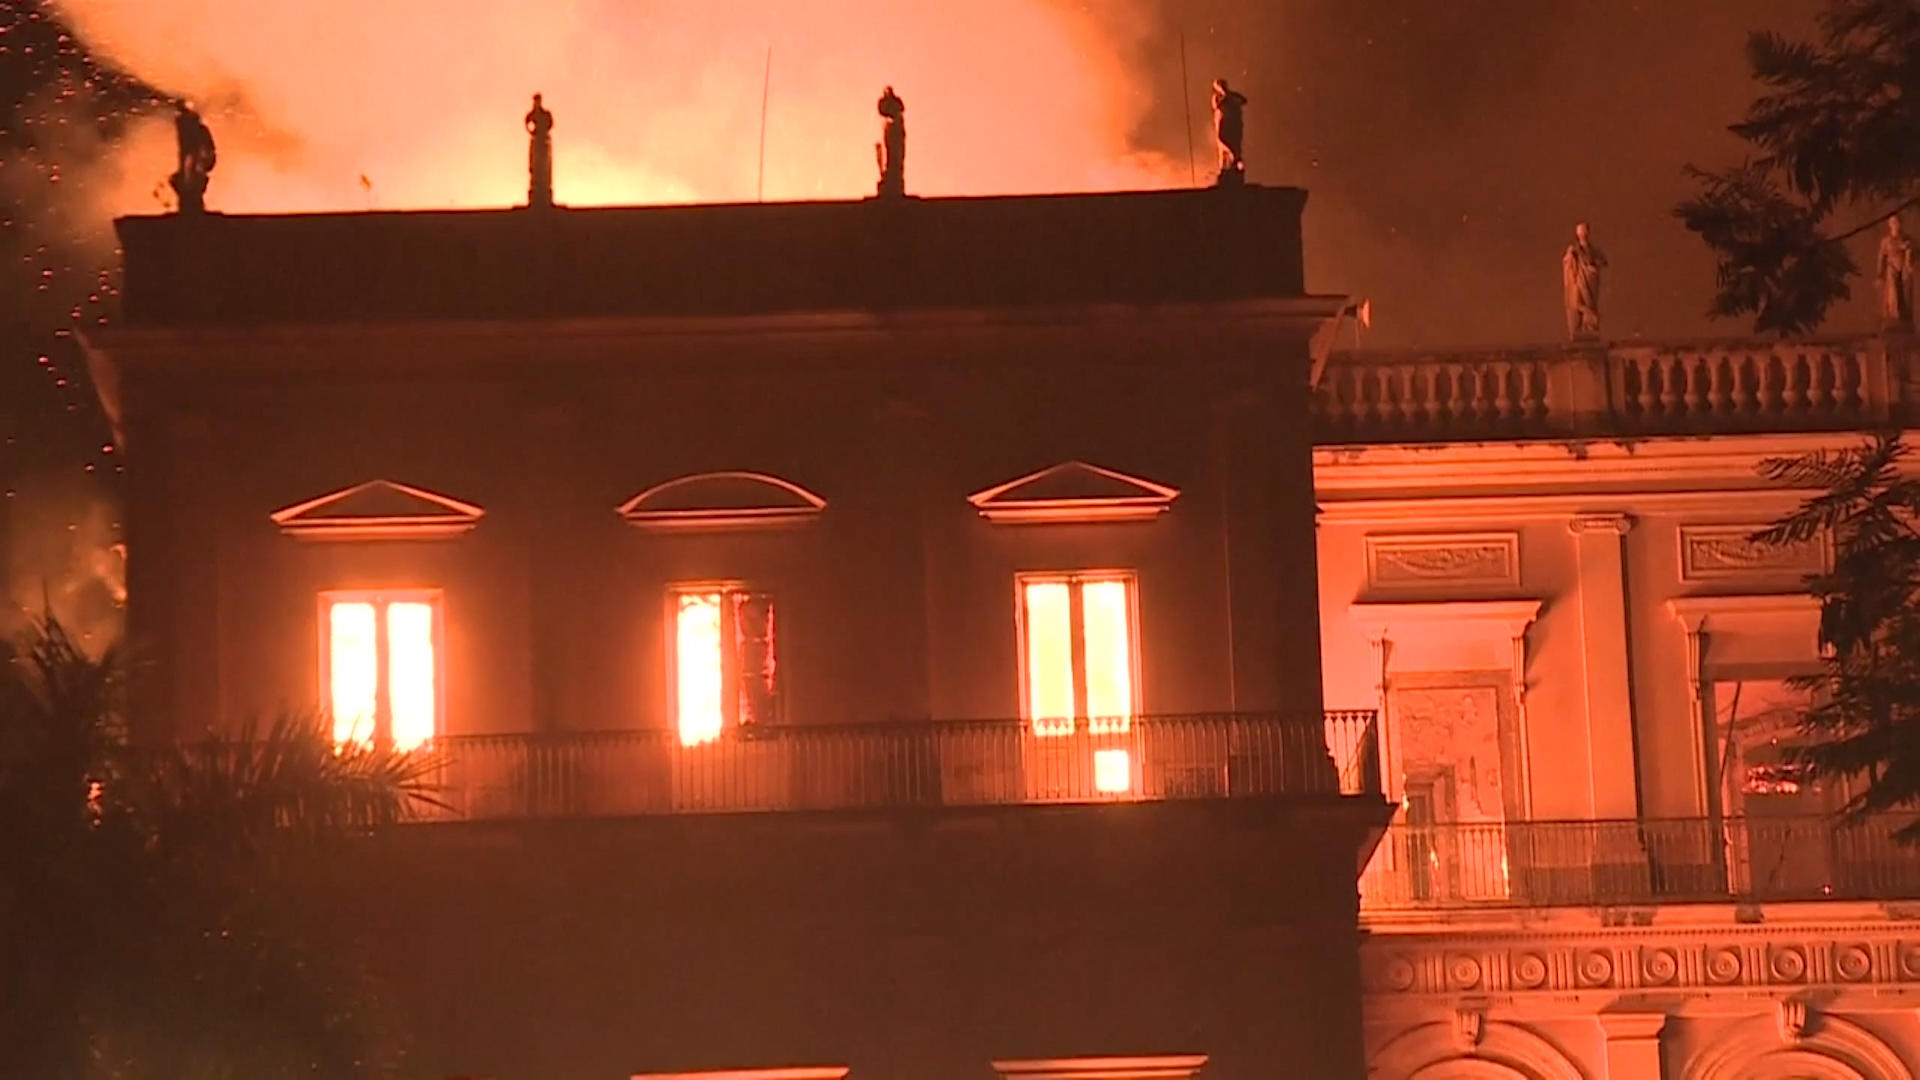 Incendio Museu DoRio